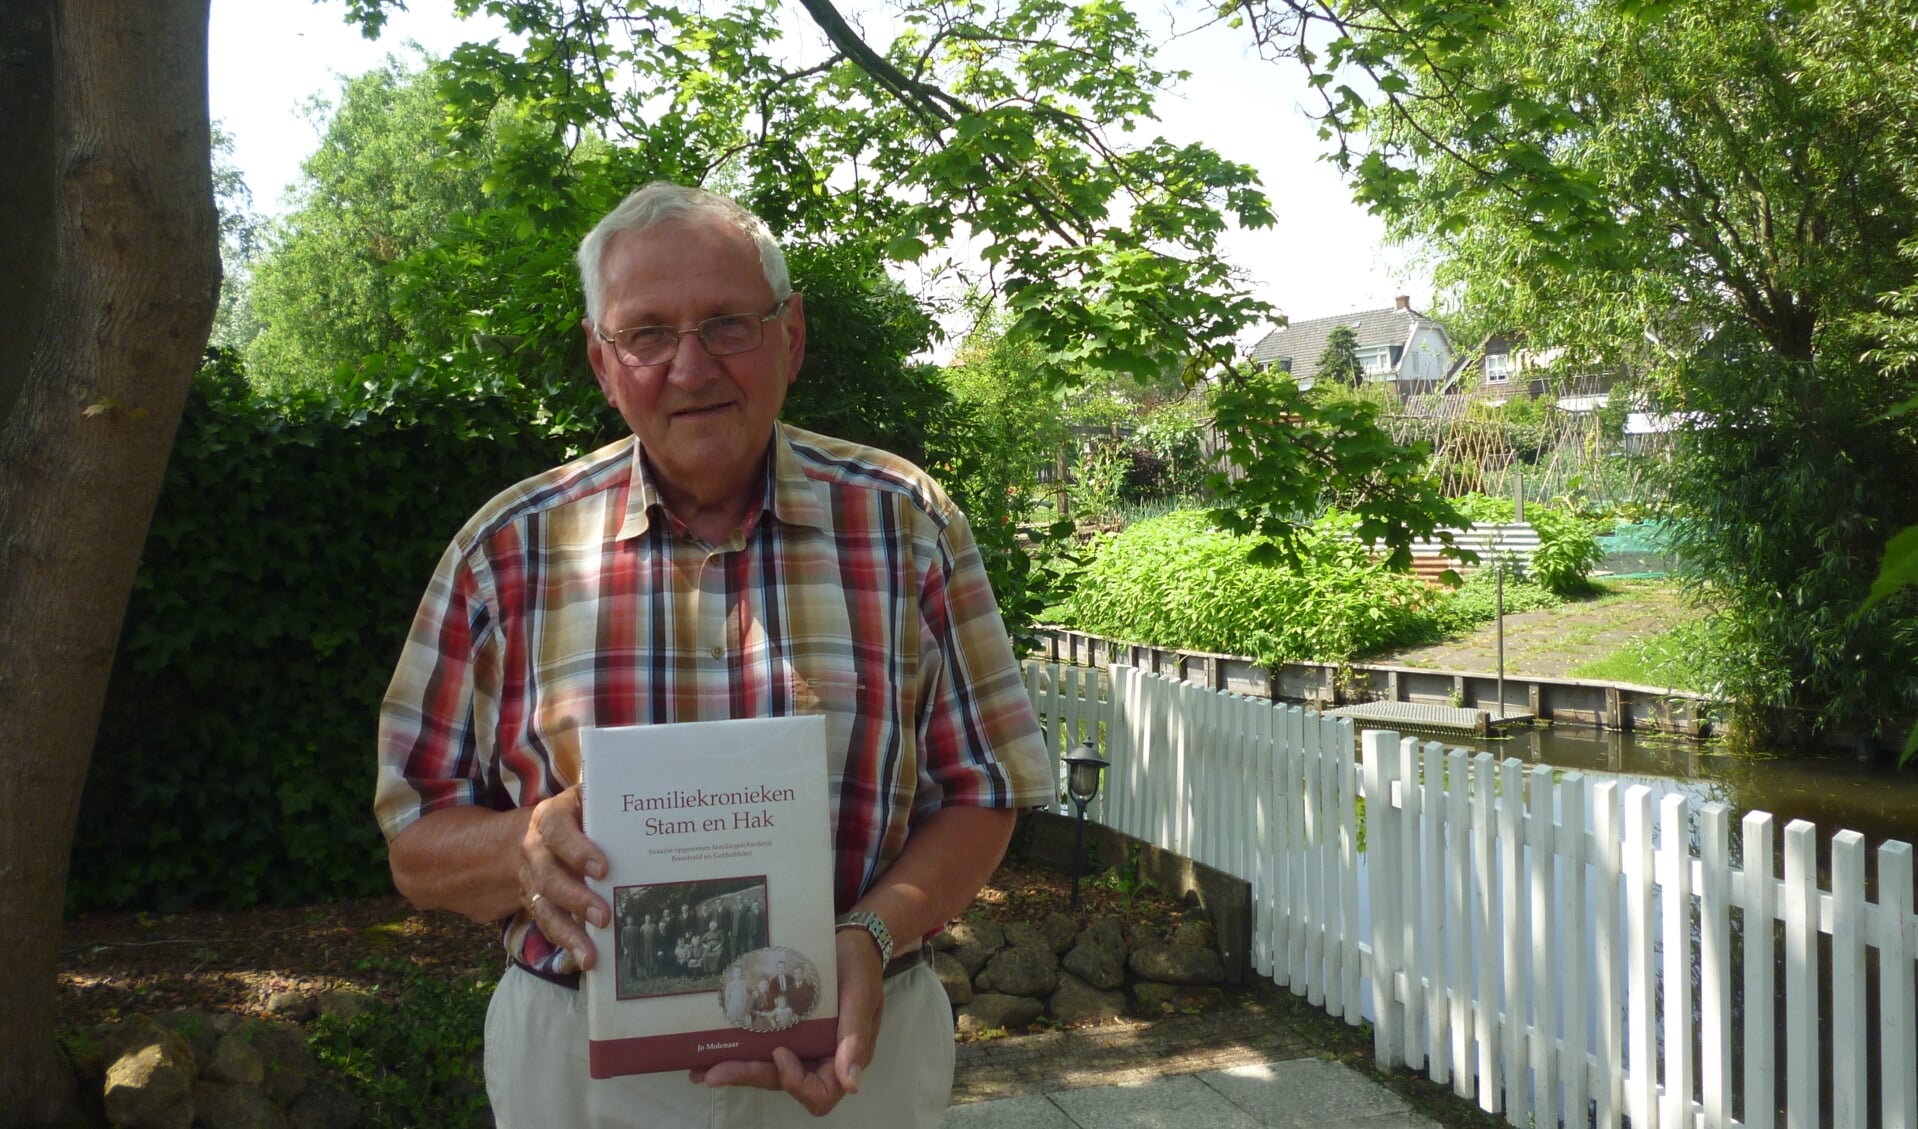 • Jo Molenaar met zijn boek over de families Stam en Hak.